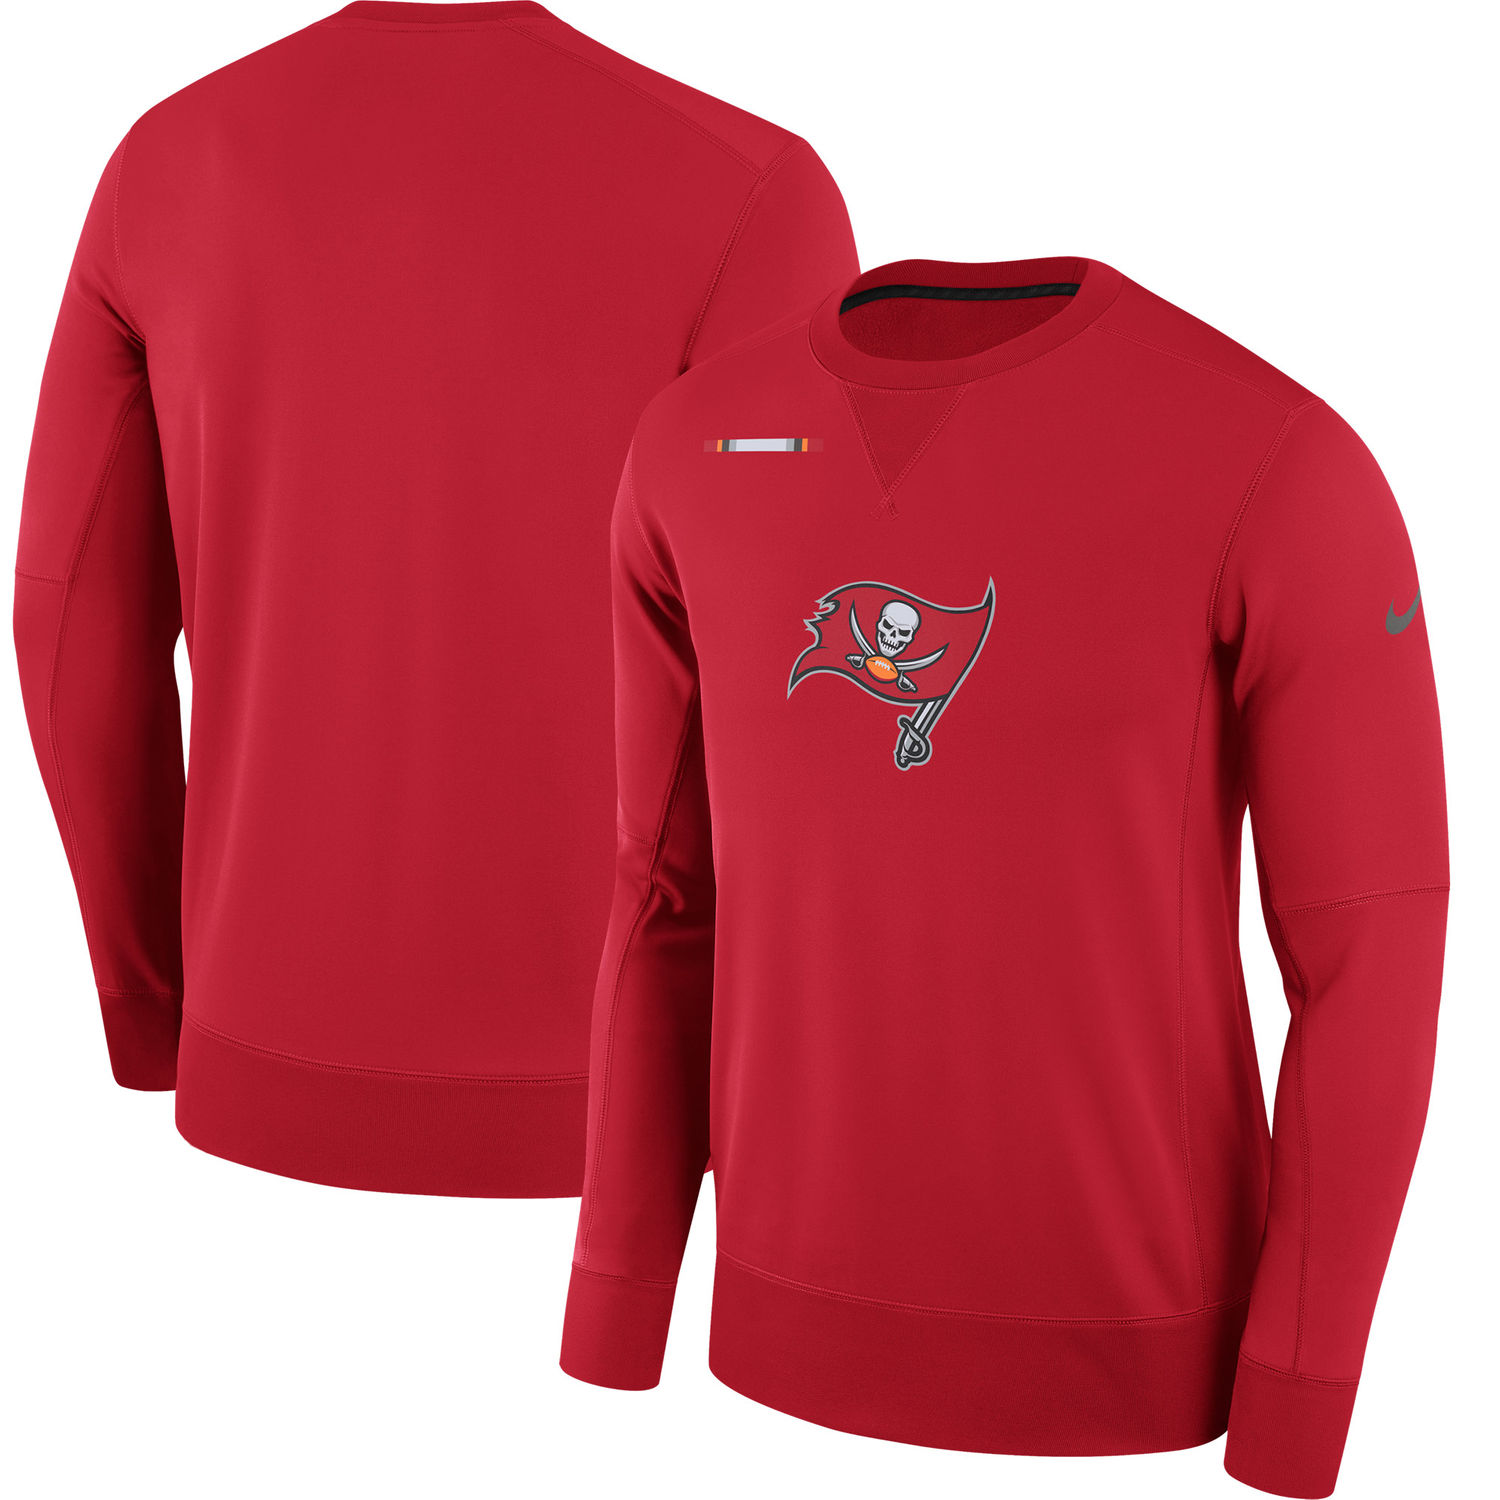 Mens Tampa Bay Buccaneers Nike Red Sideline Team Logo Performance Sweatshirt